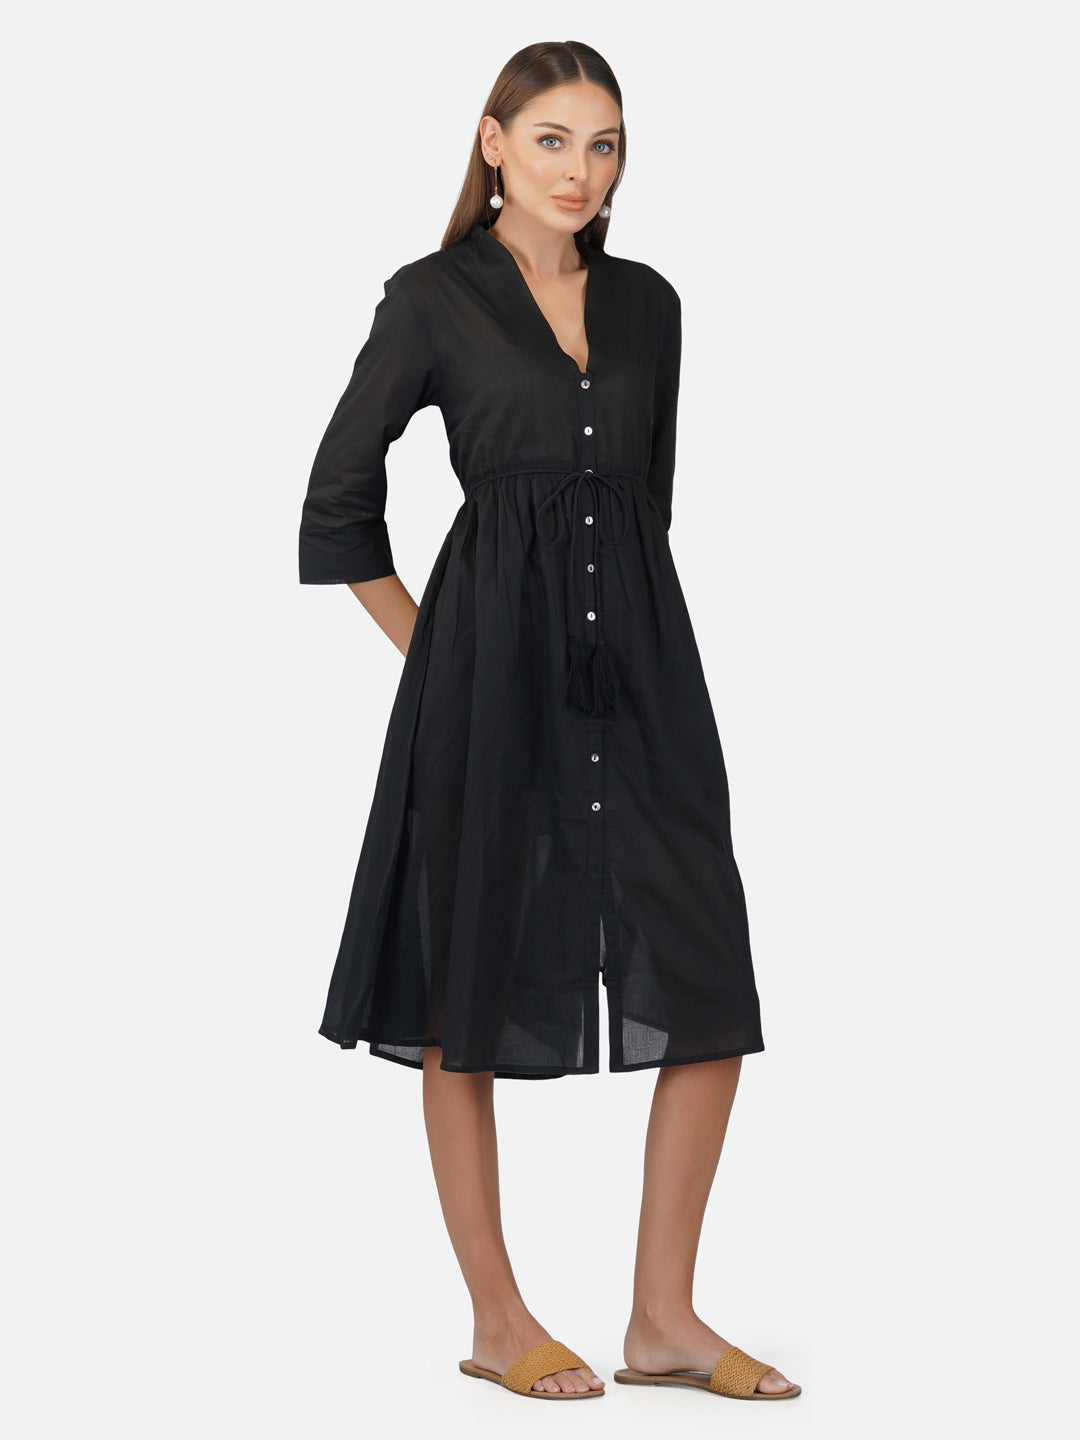 Porsorte Womens Cotton Voile Black Casual Button Down Shirt Dress